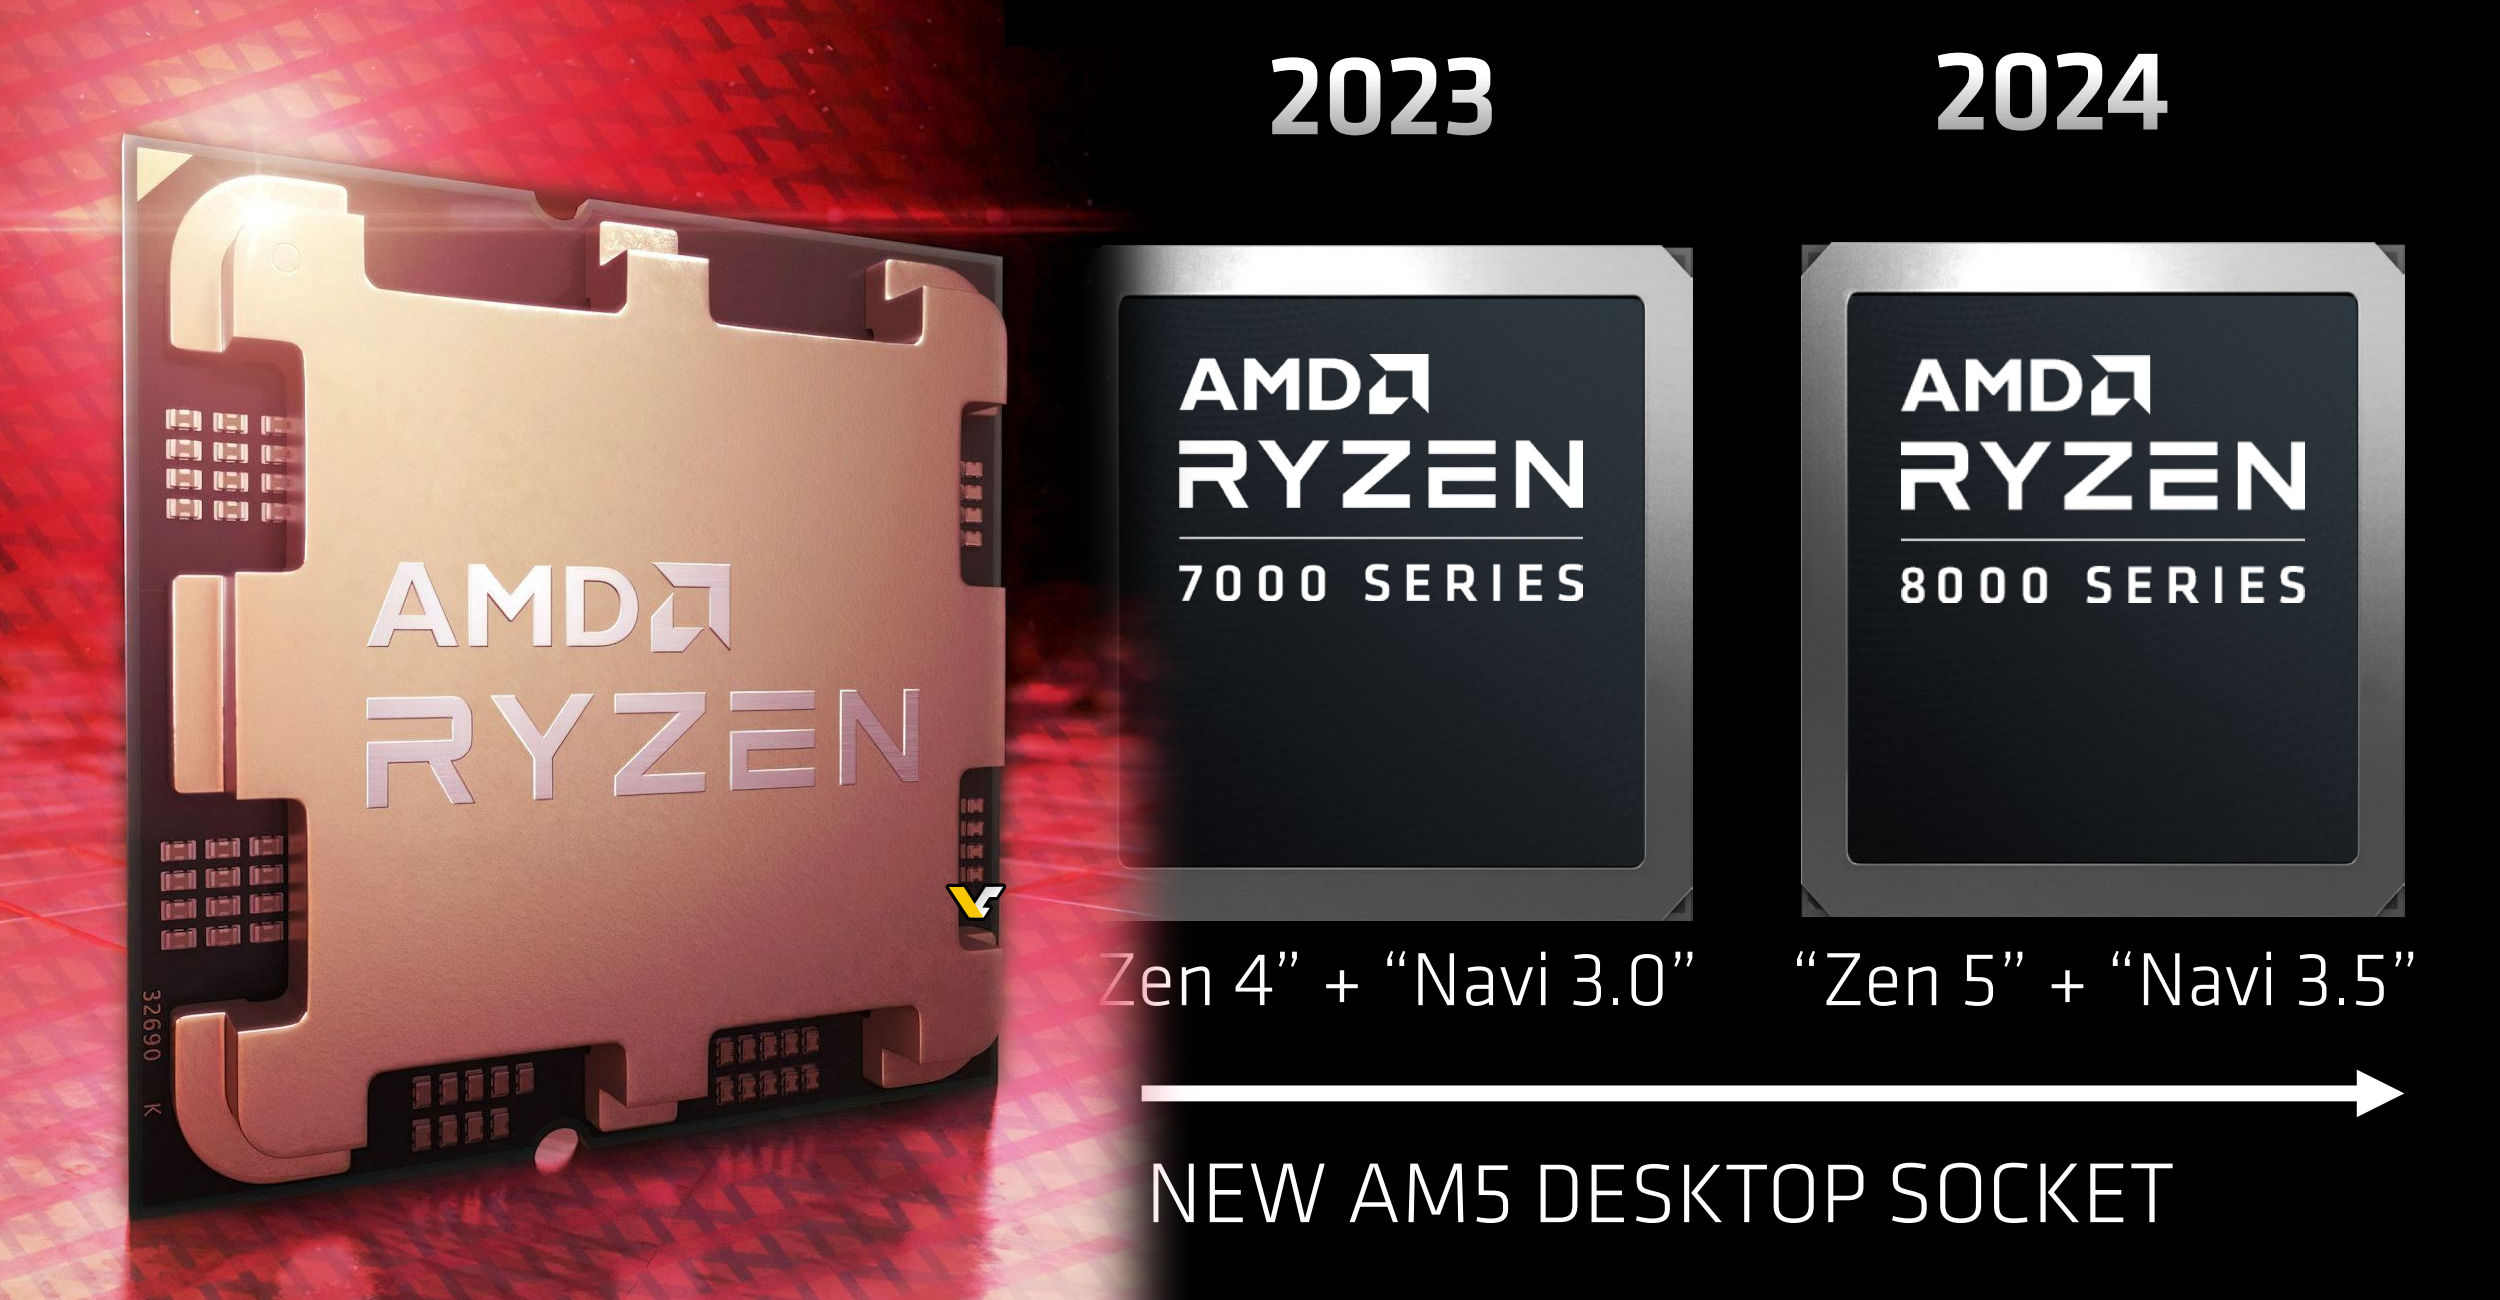 AMD bestätigt, dass die Ryzen 8000 AM5 Desktop-Serie über eine Zen5-CPU und eine Navi 3.5-GPU verfügen wird